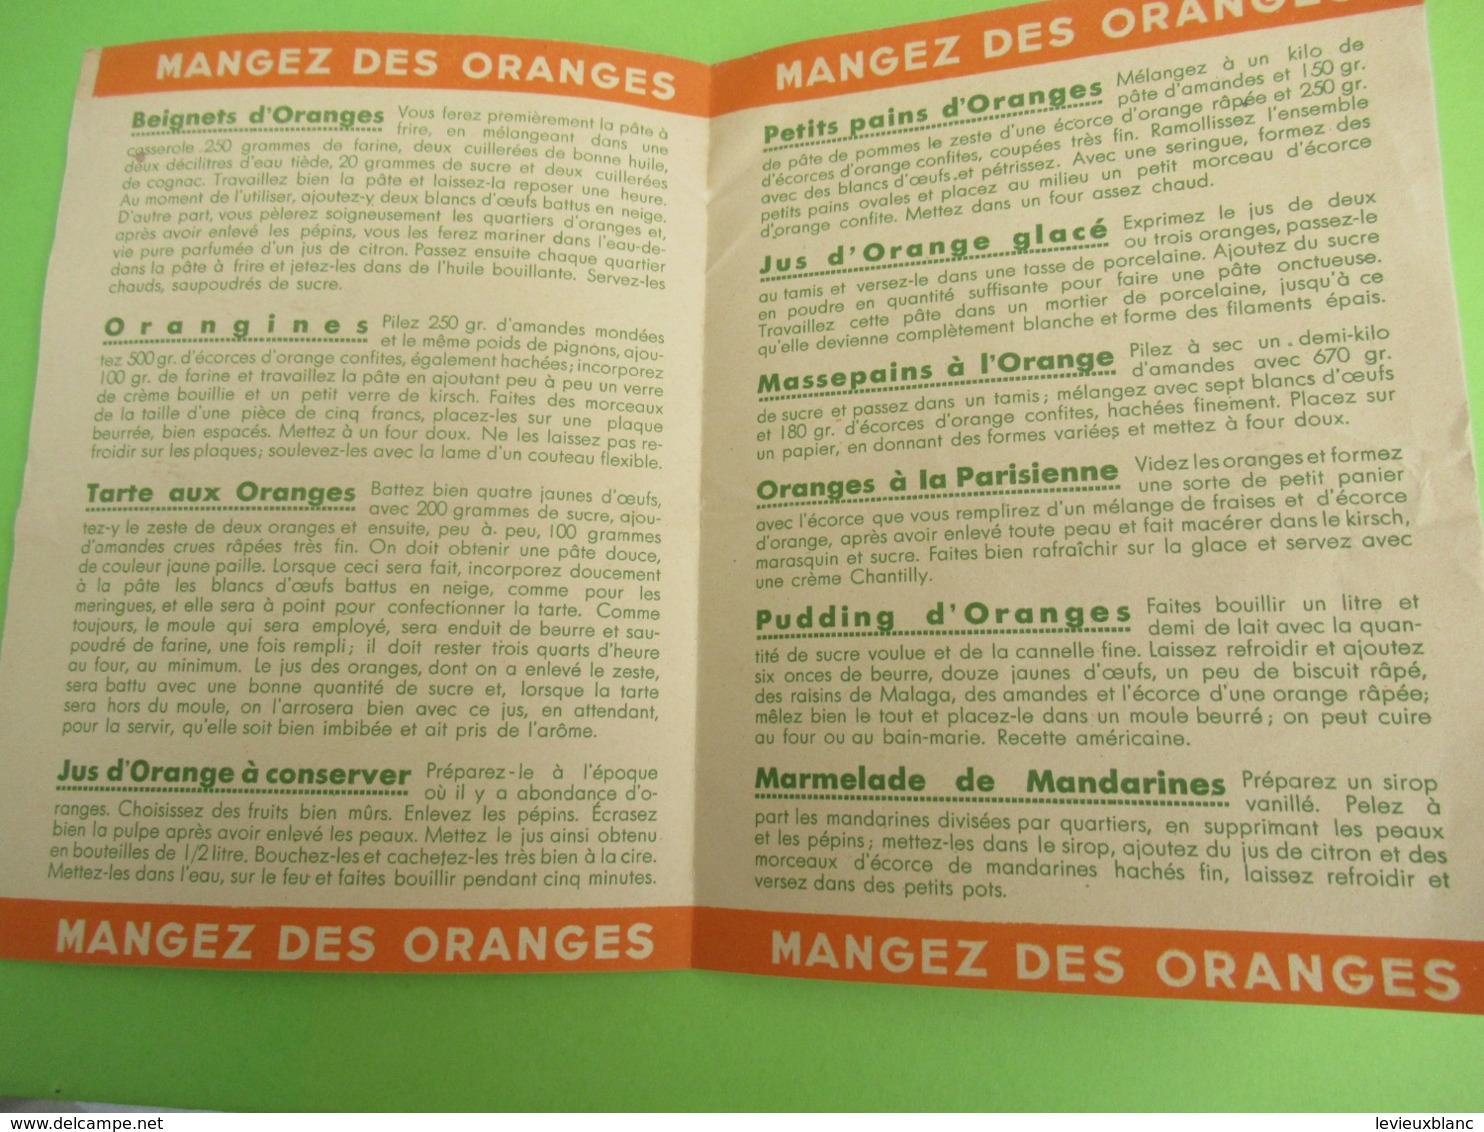 Prospectus à Deux Volets / Pour Votre Santé  Mangez Des  Oranges/ Docteur  FAVREAU/ Vers 1950  VPN271 - Other & Unclassified